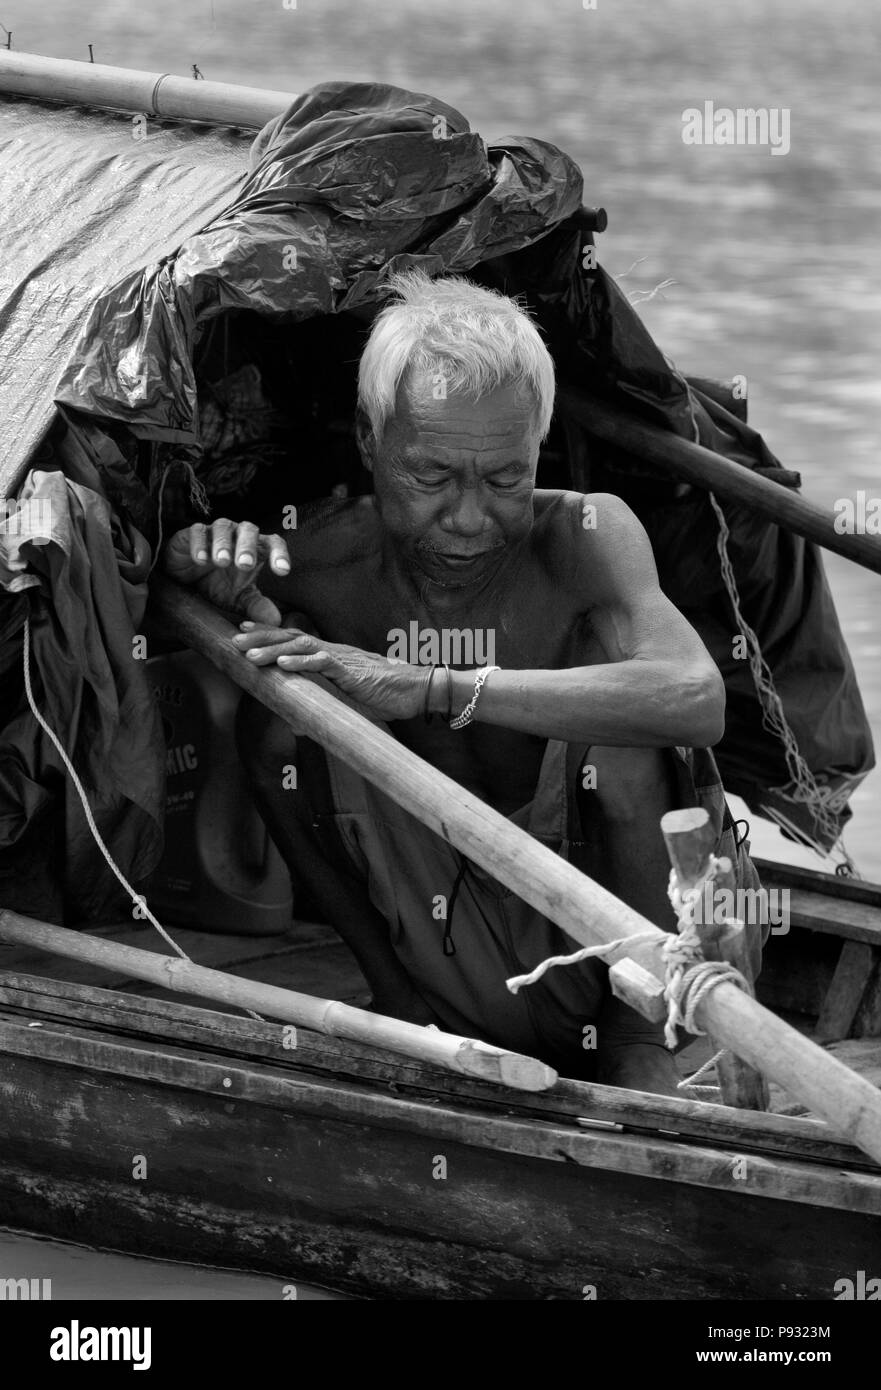 Un homme Moken dans son bateau près de son village sur Ko Surin île thaïlandaise dans le Parc National de Mu Koh Surin - la mer d'Andaman, Thaïlande Banque D'Images